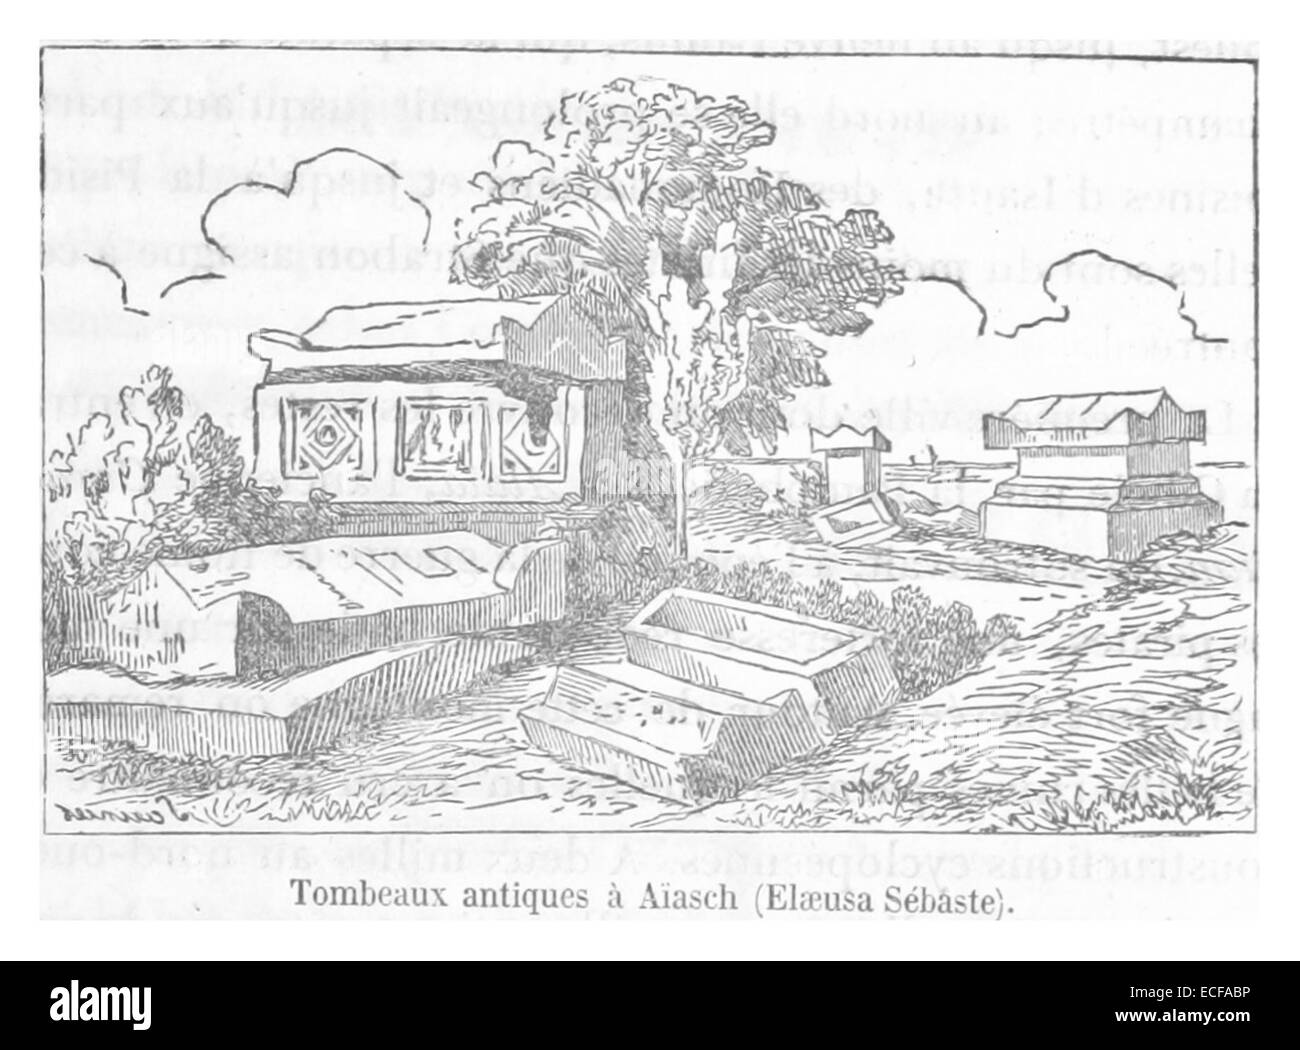 LANGLOIS(1861) p203 Tombeaux antiques un Aiasch Banque D'Images